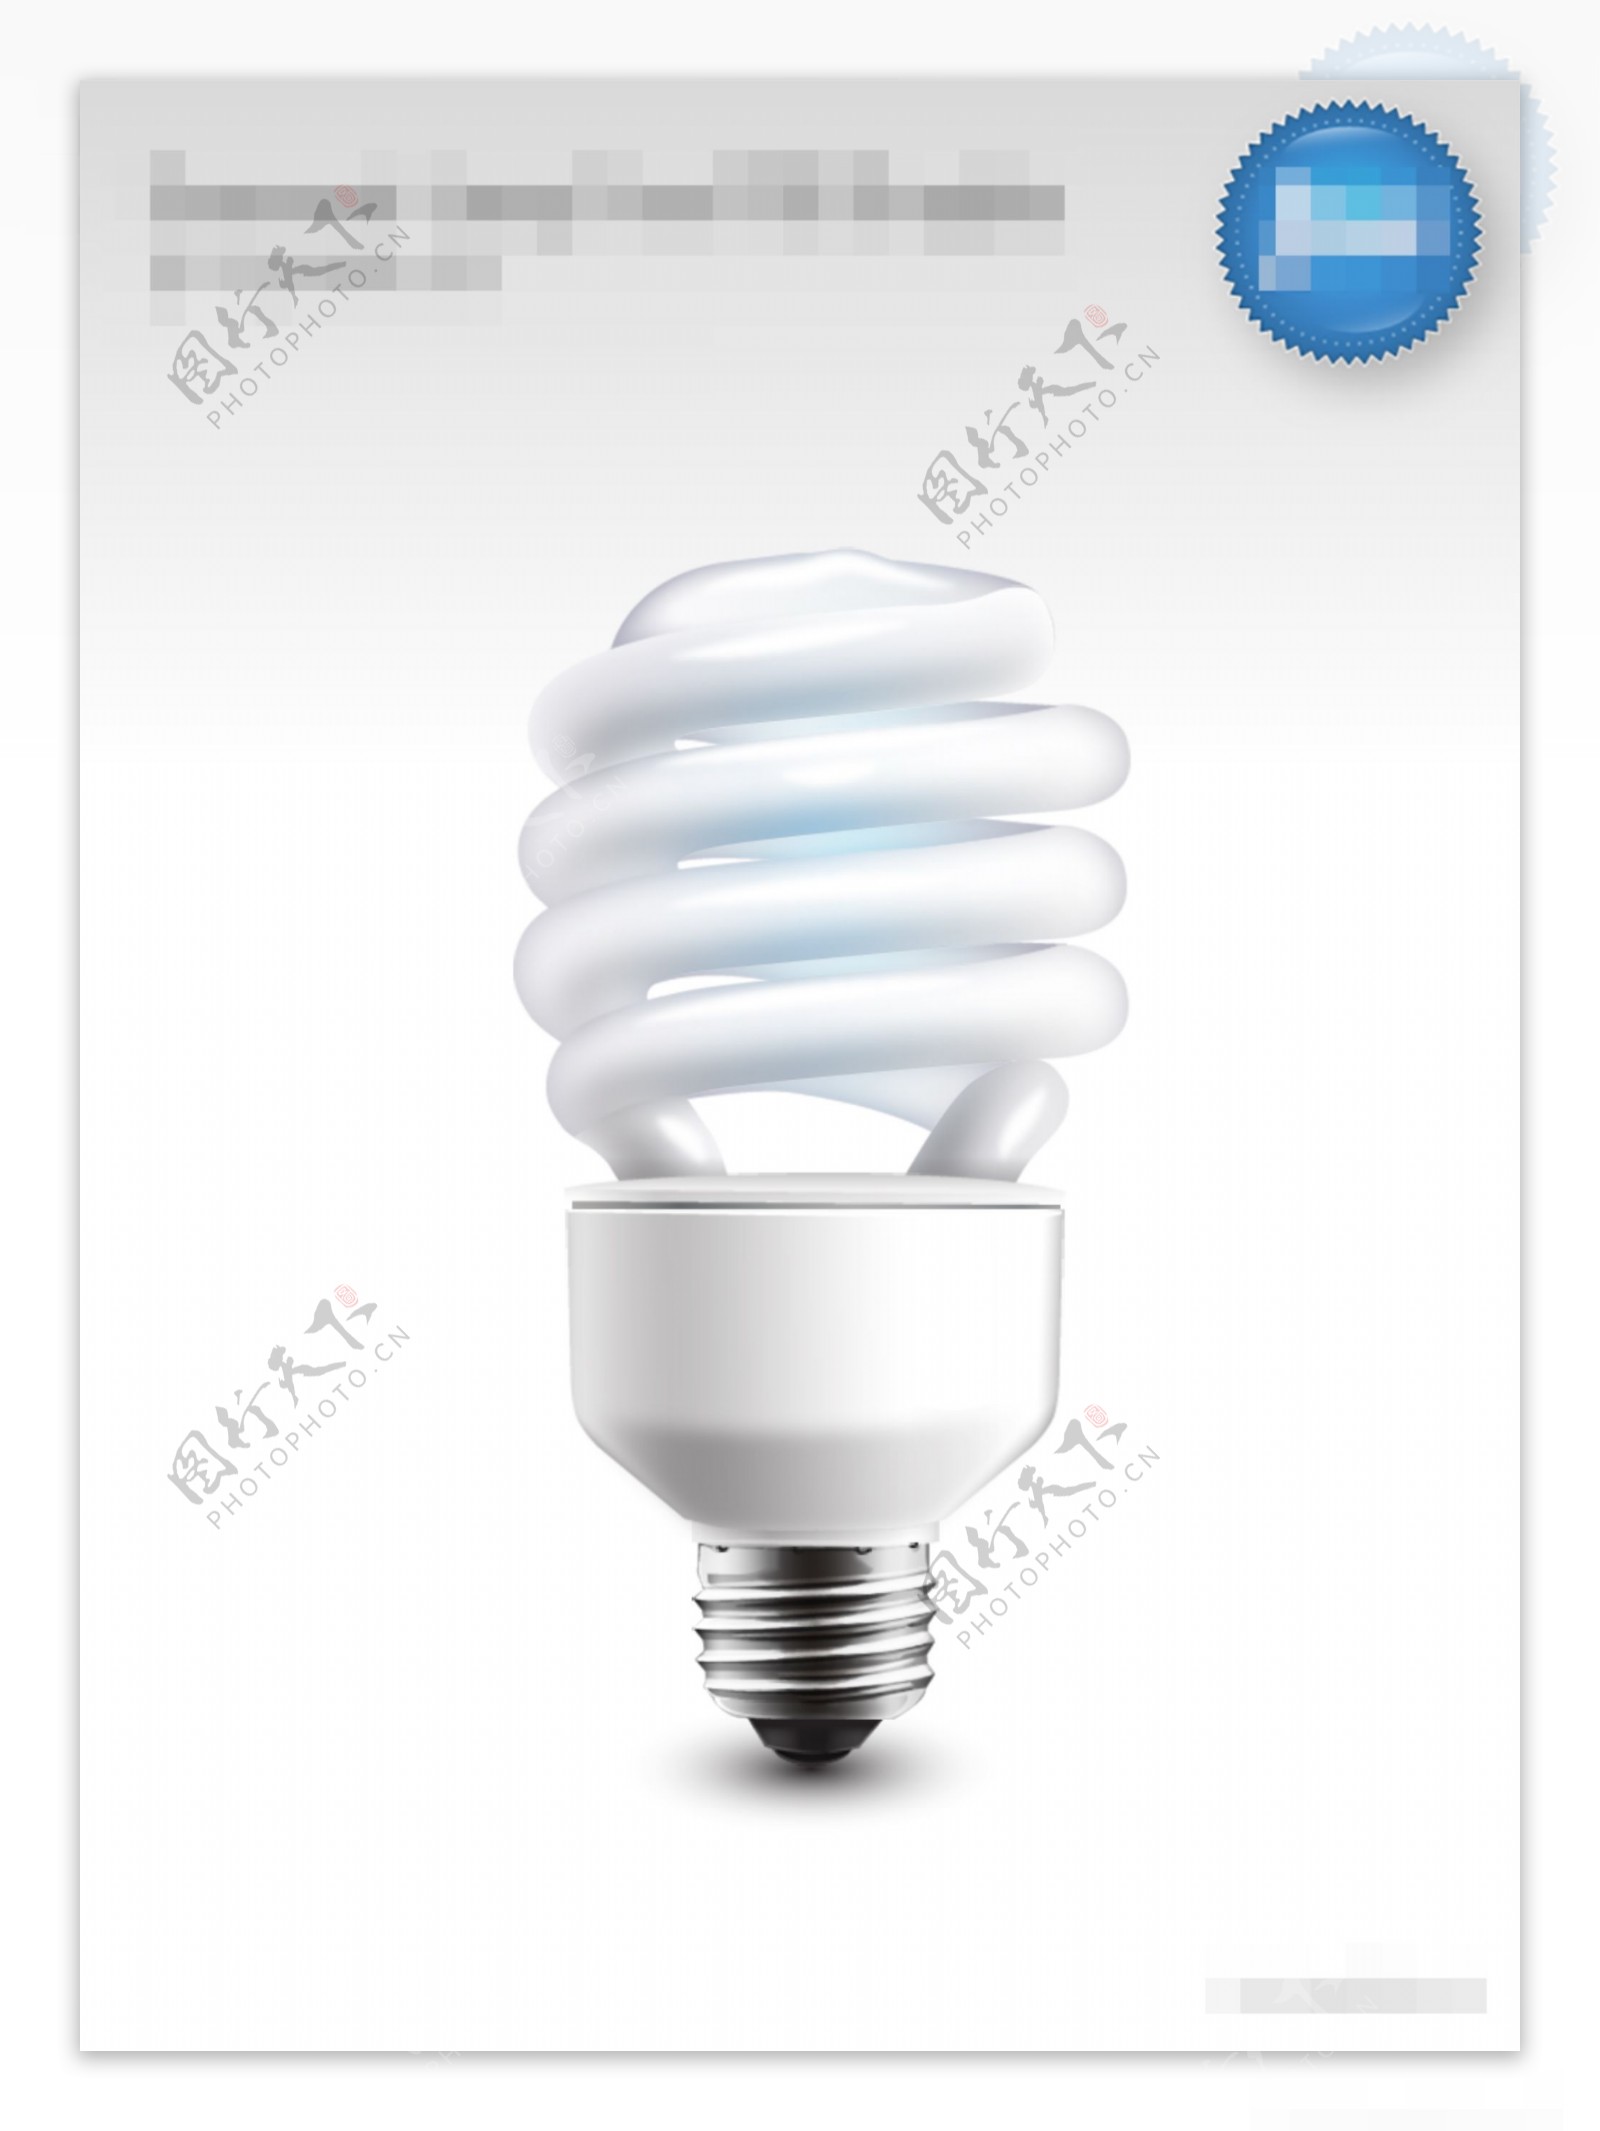 白色灯泡icon图标设计